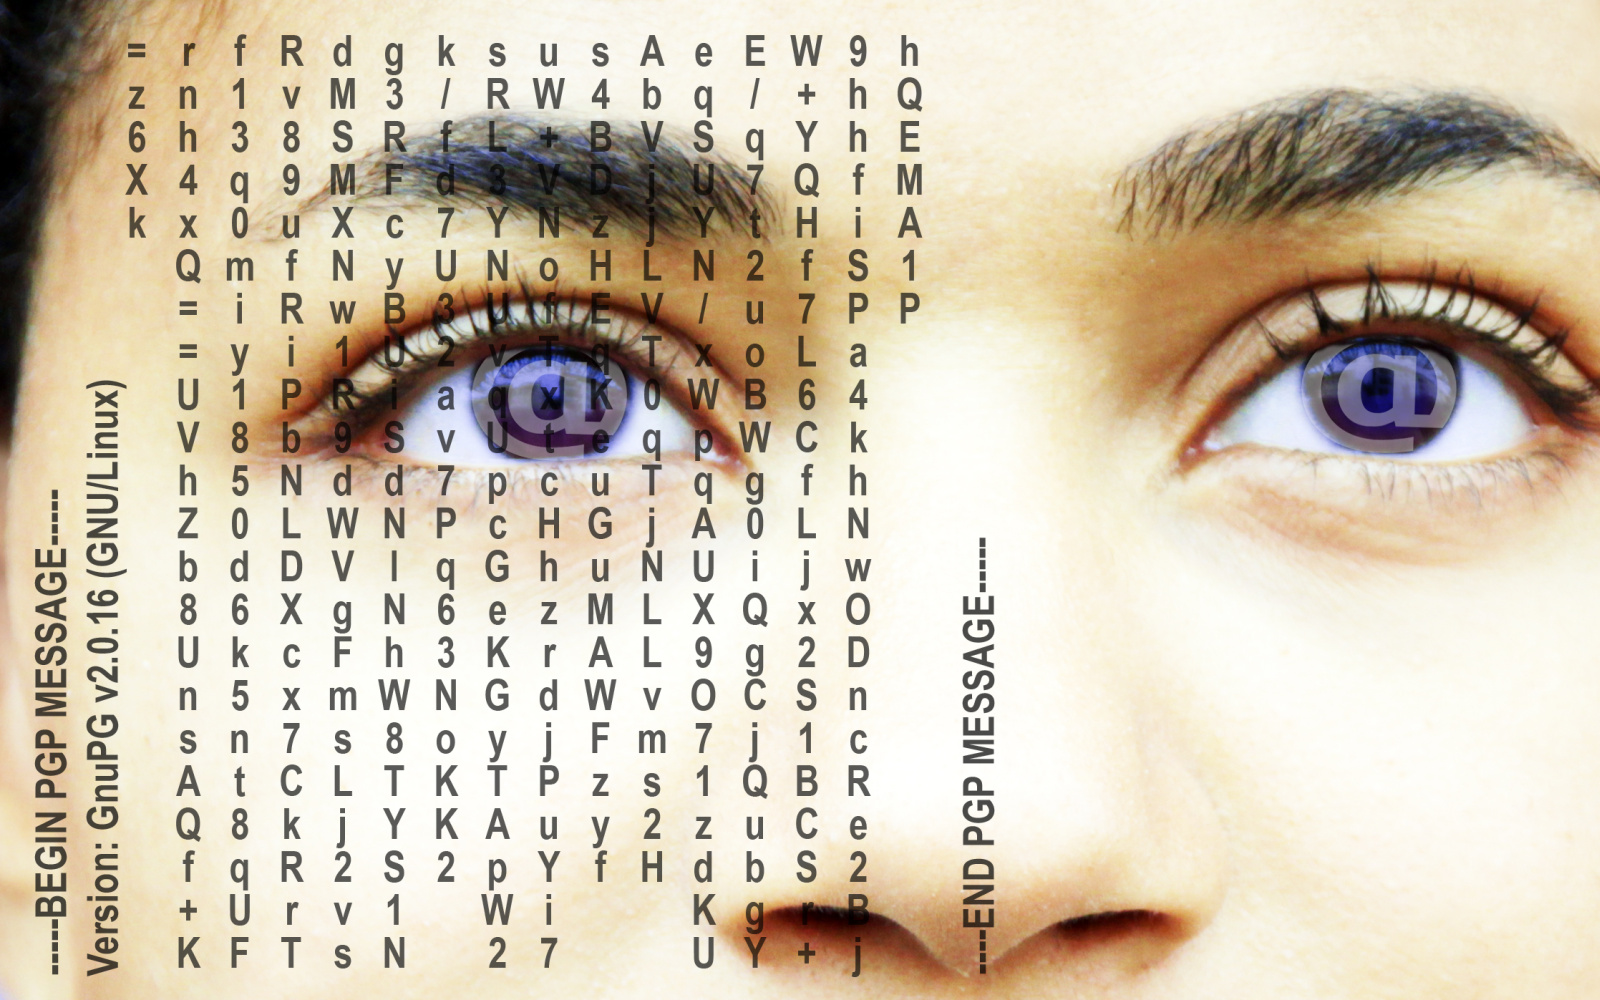 Der Ausschnit eines menschlichen Gesichts ist zu sehen, der Fokus liegt auf den Augen und der Nase, die teilweise mit Buchstaben überzogen sind.